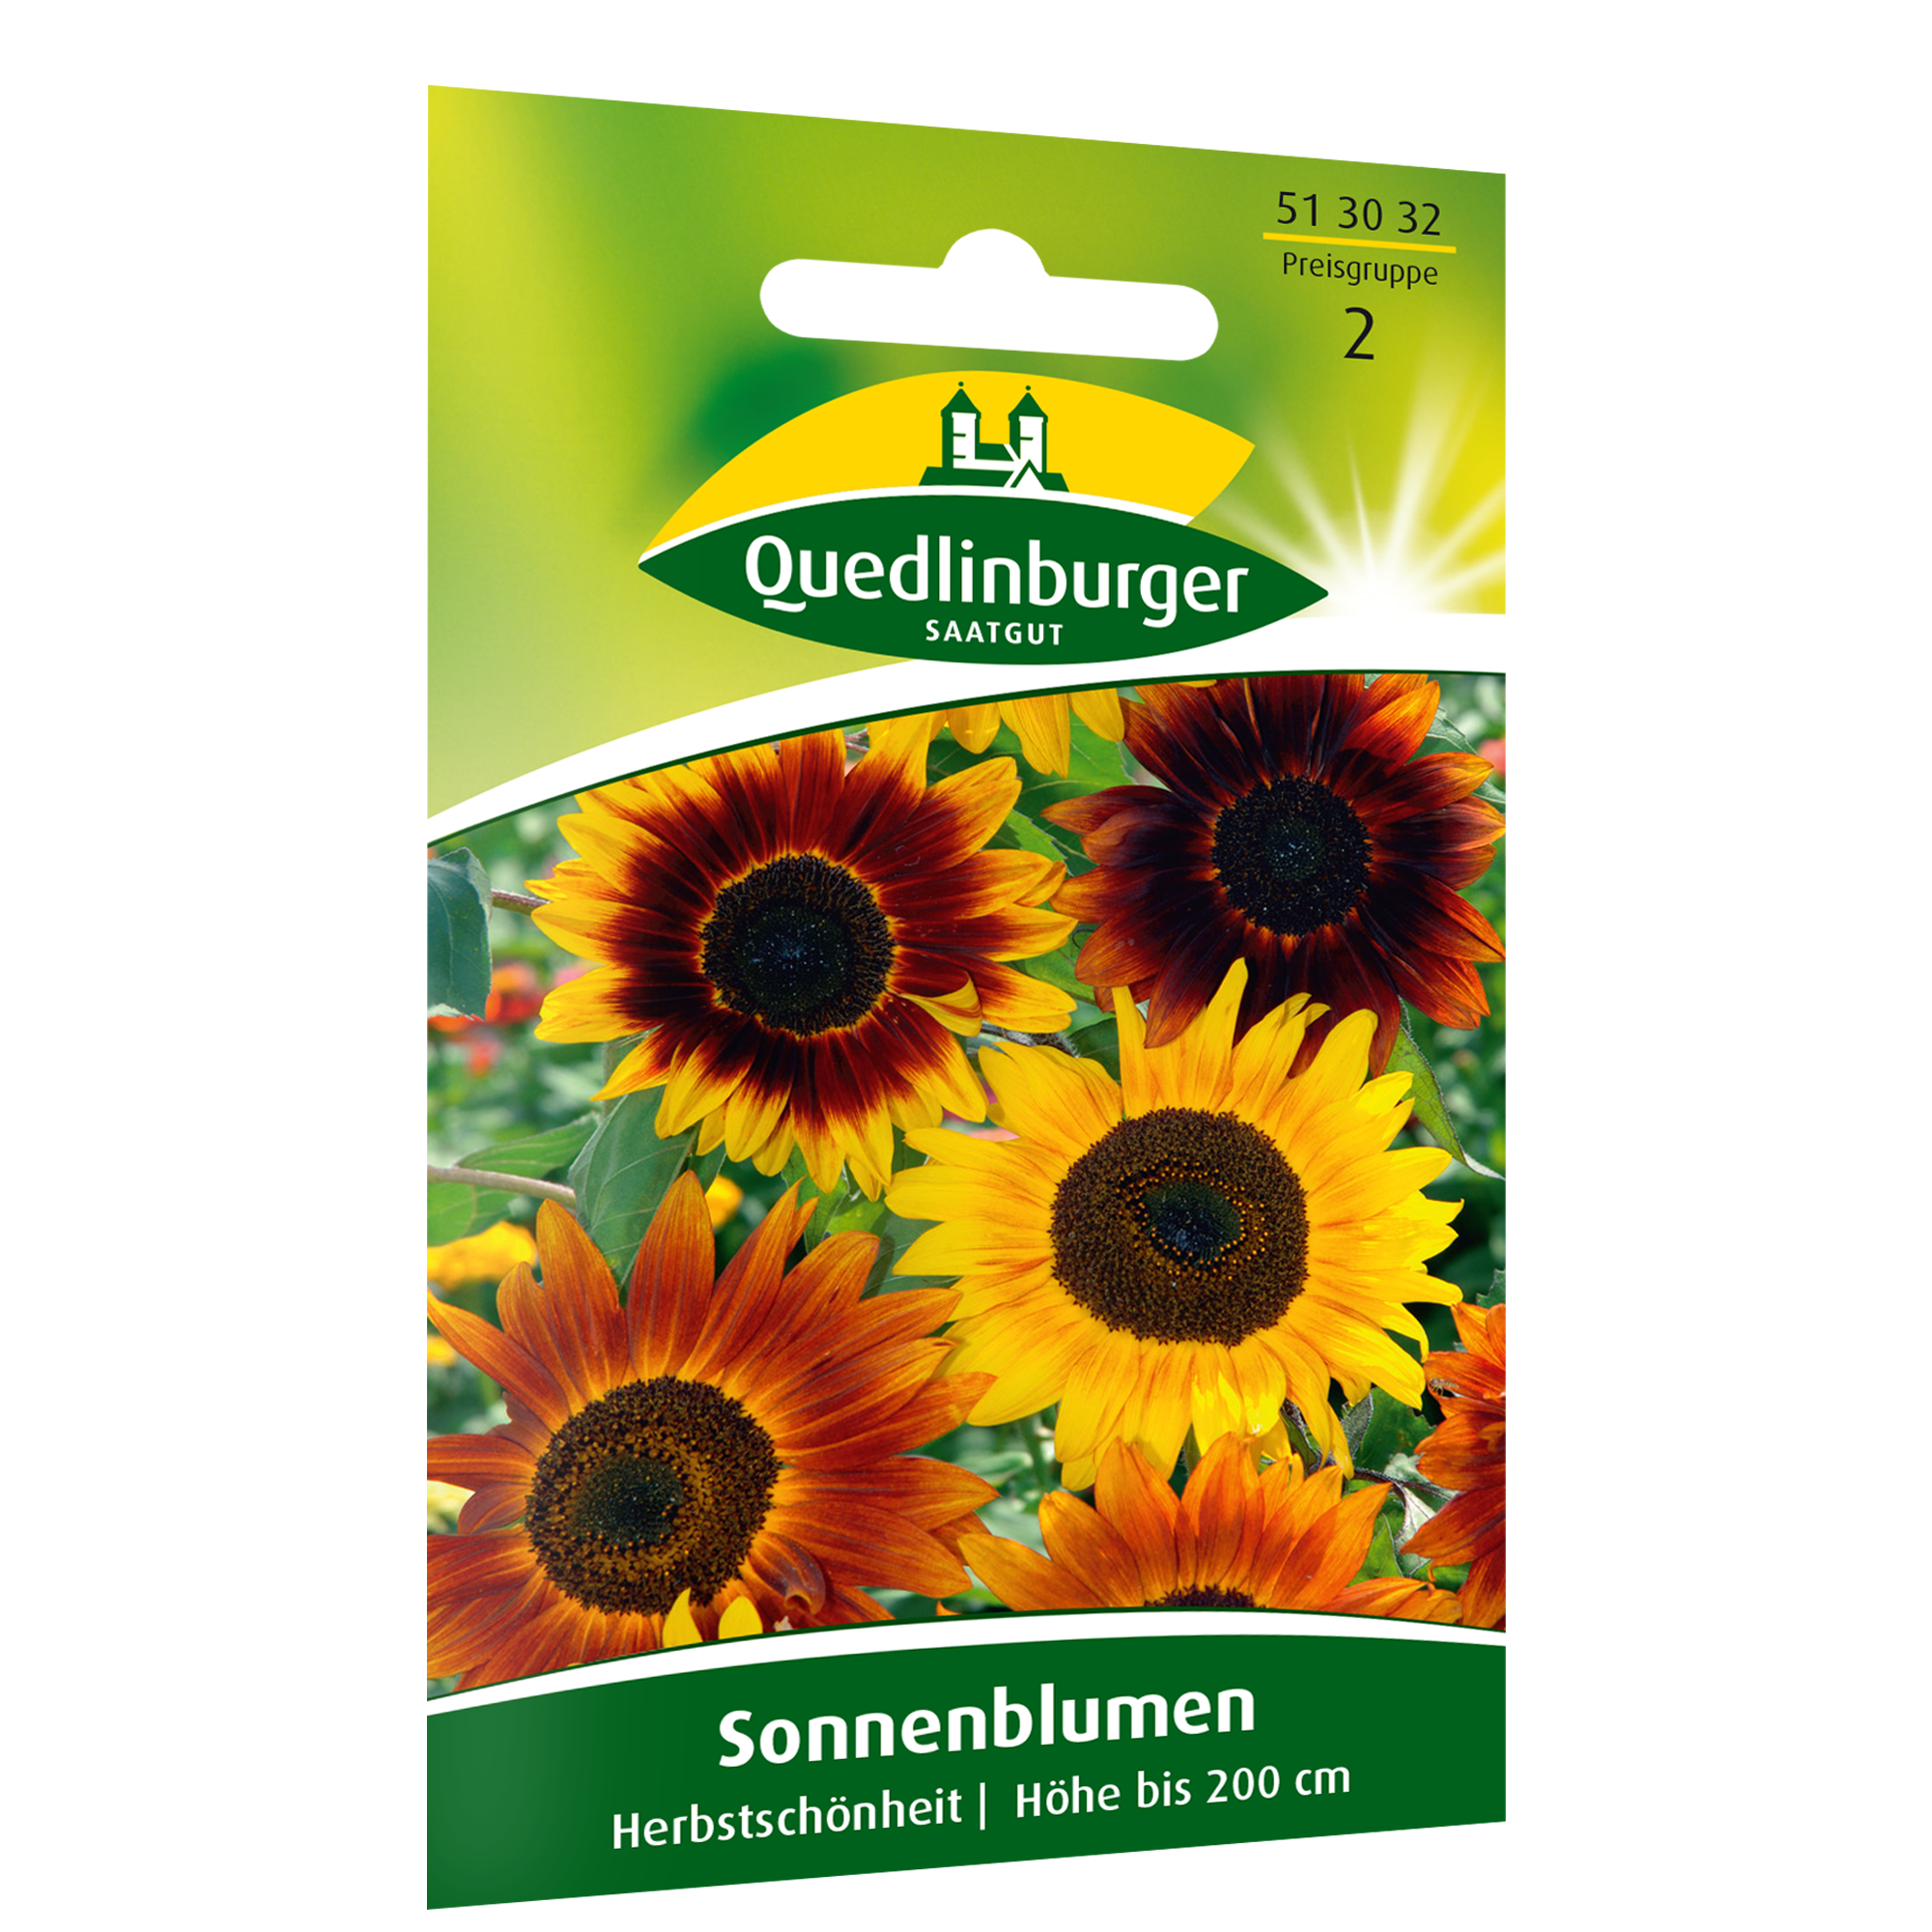 Sonnenblumen 'Herbstschönheit' + product picture